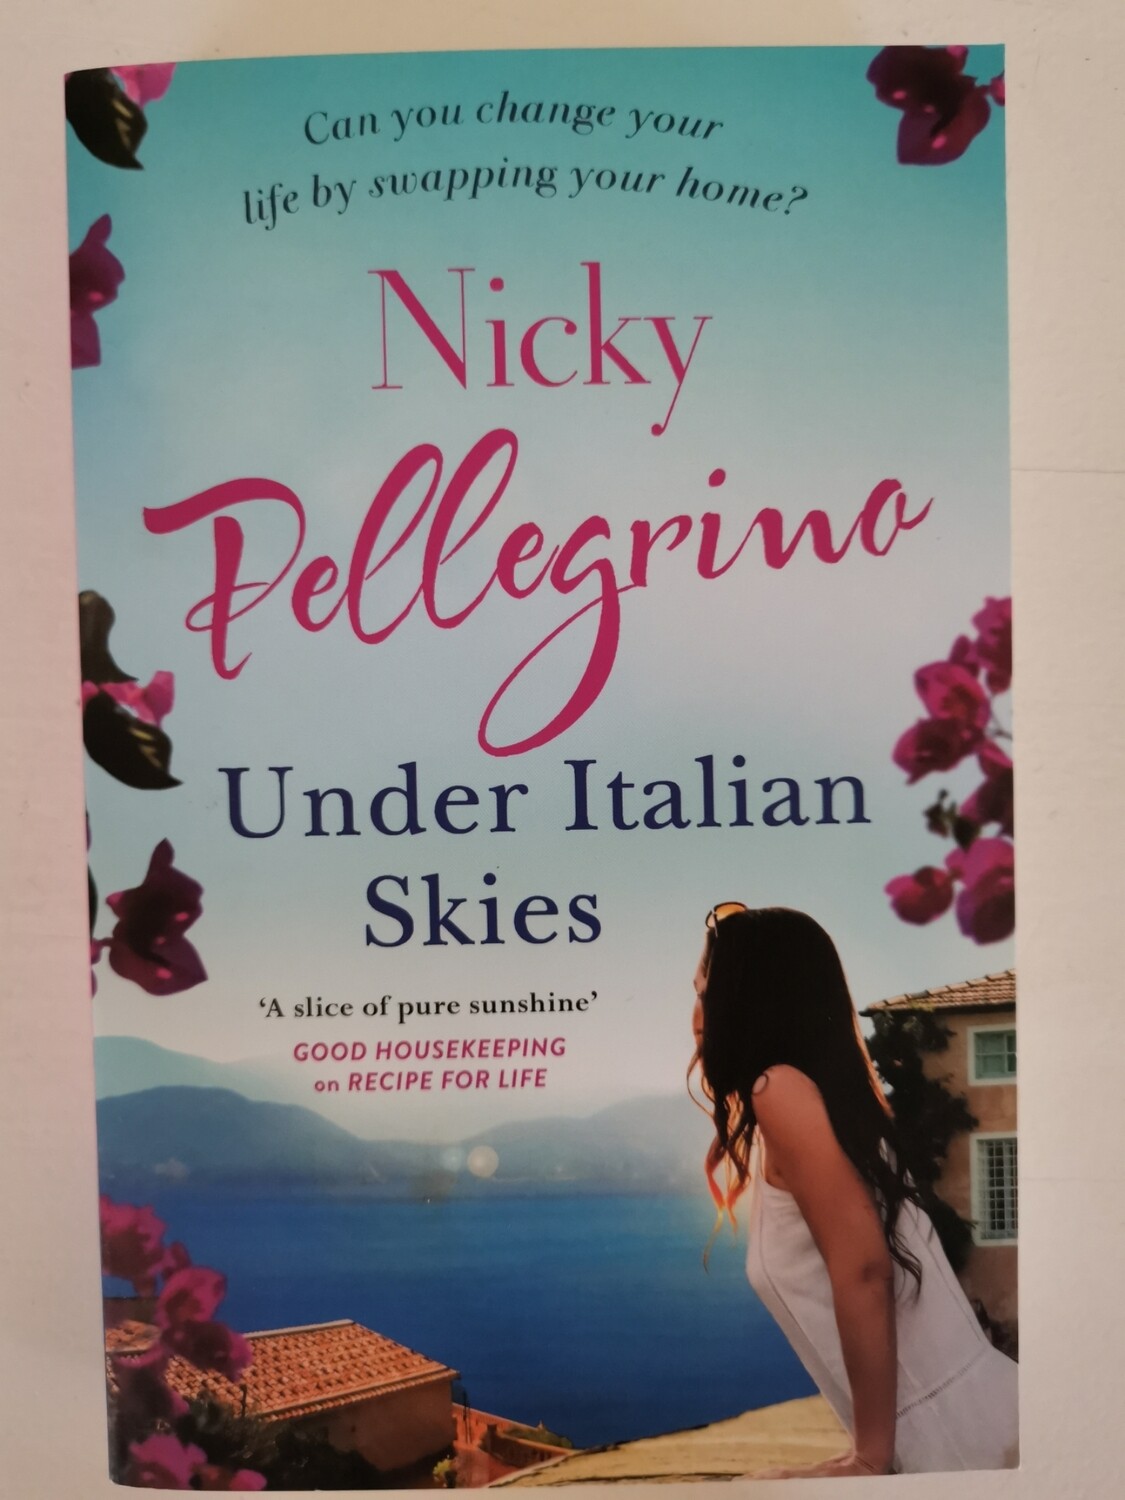 Under Italian skies, Nicky Pelegrino